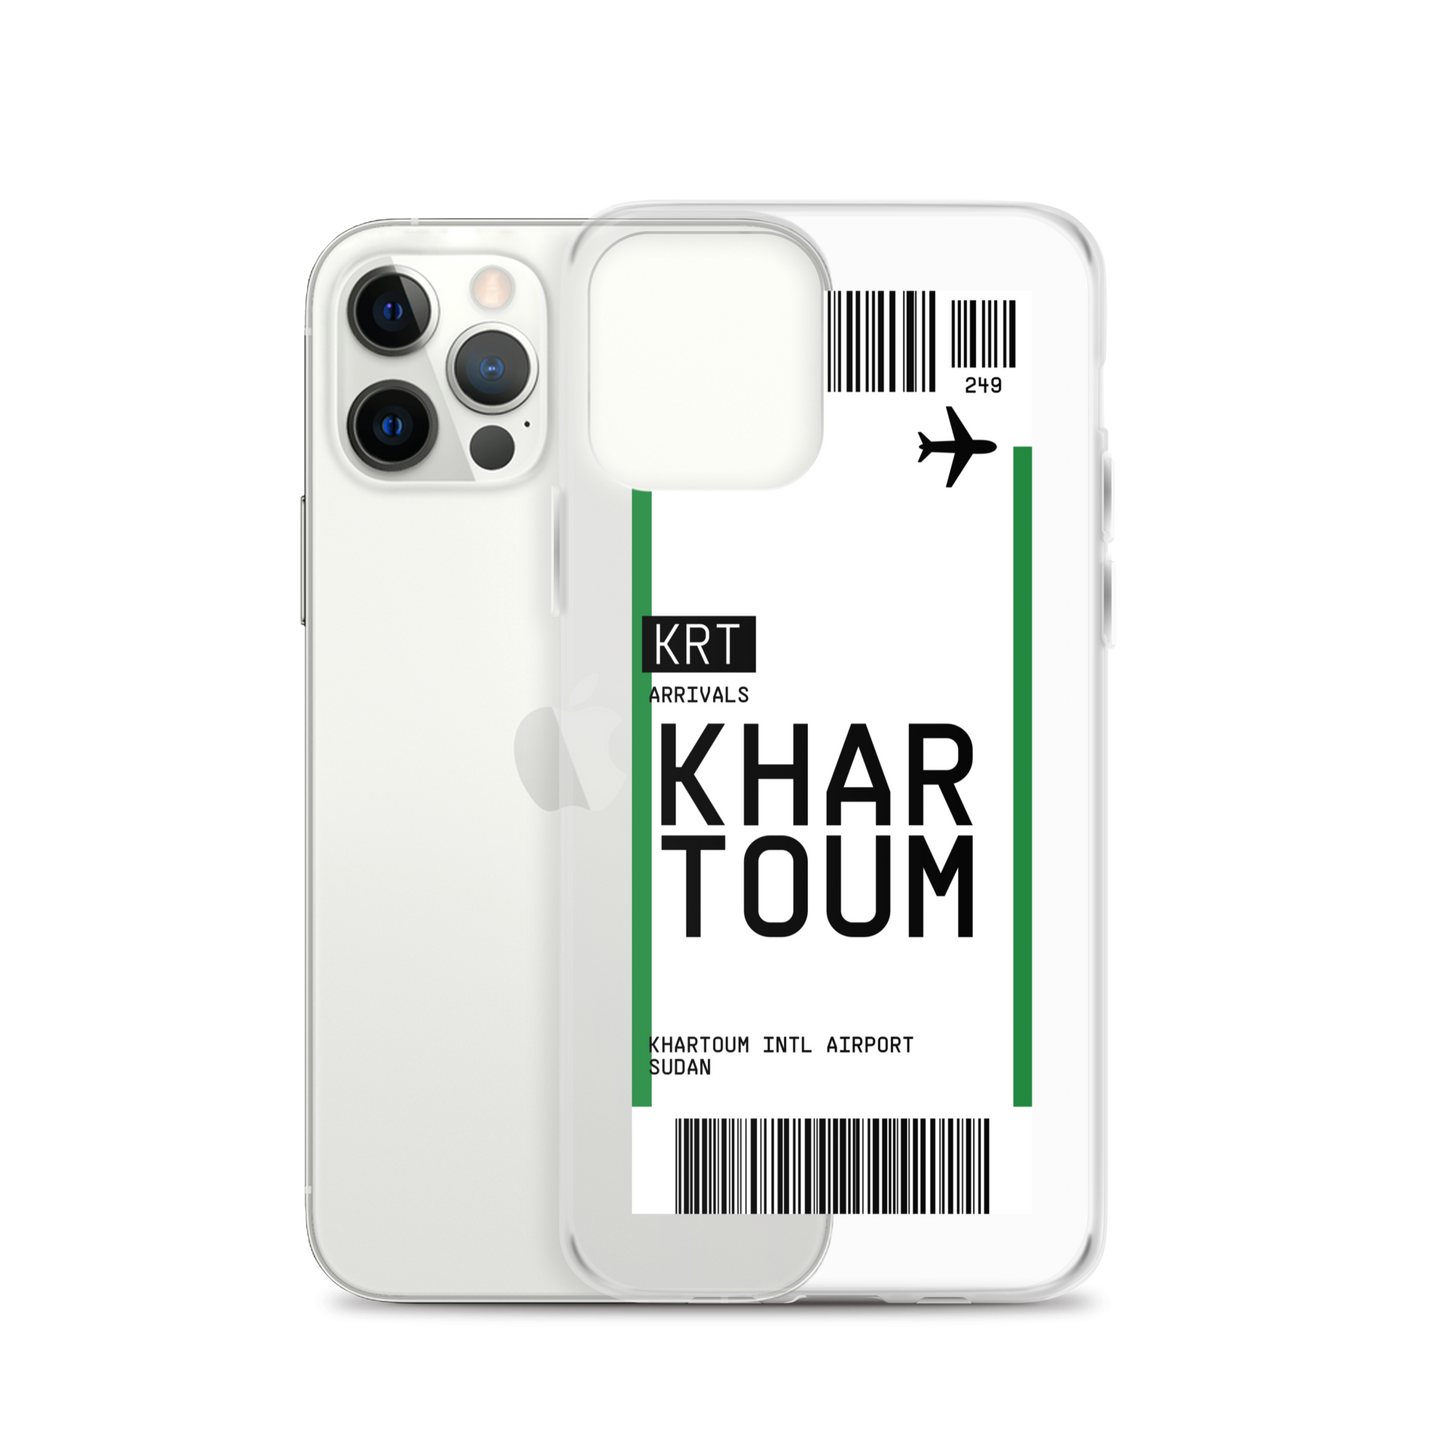 Khartoum Ticket iPhone® Case